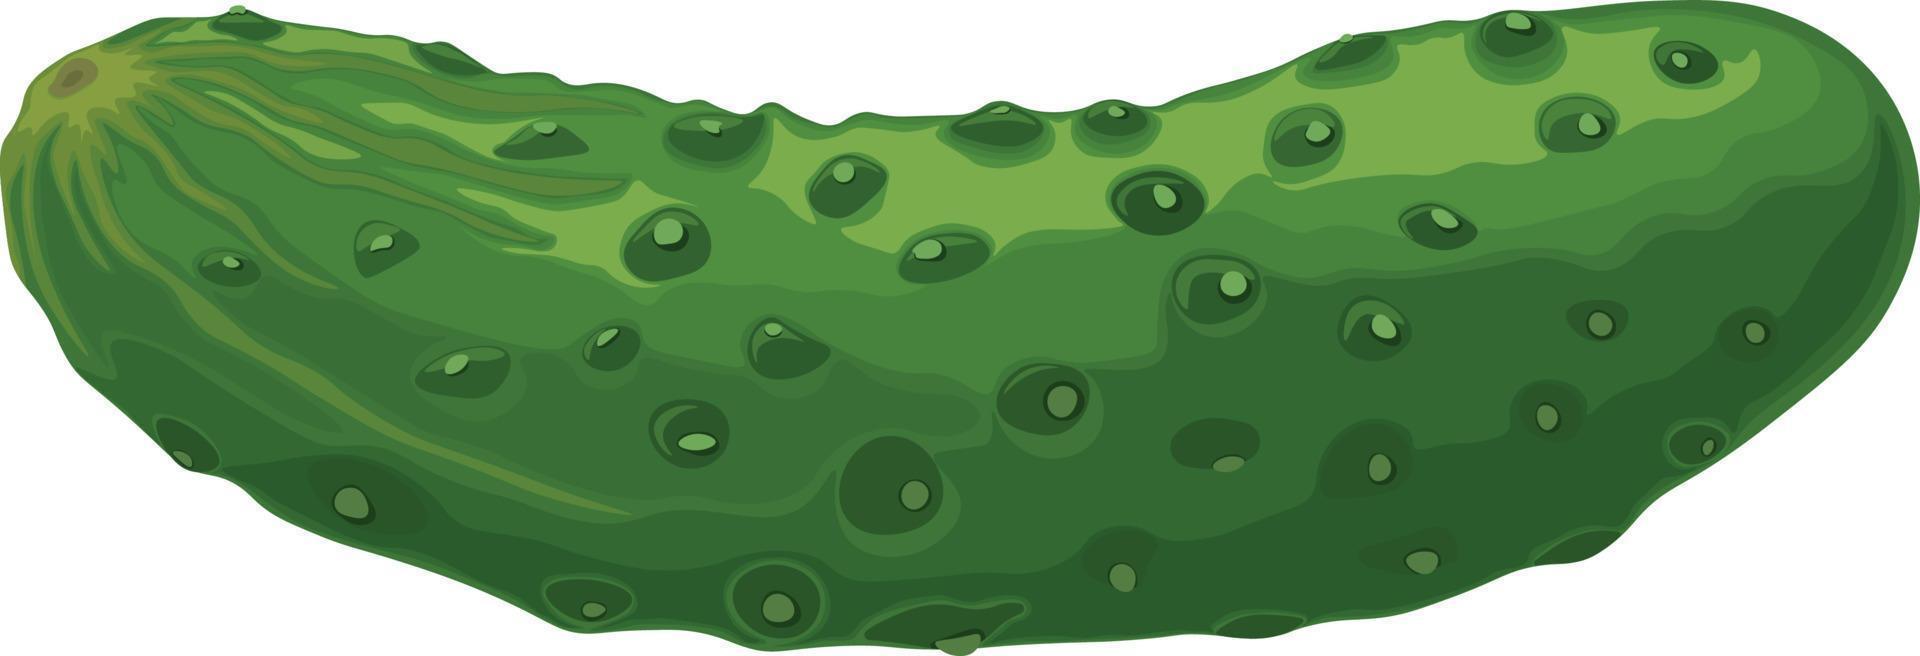 concombre vert. image d'un concombre vert mûr. produit végétarien vert. illustration vectorielle isolée sur fond blanc vecteur